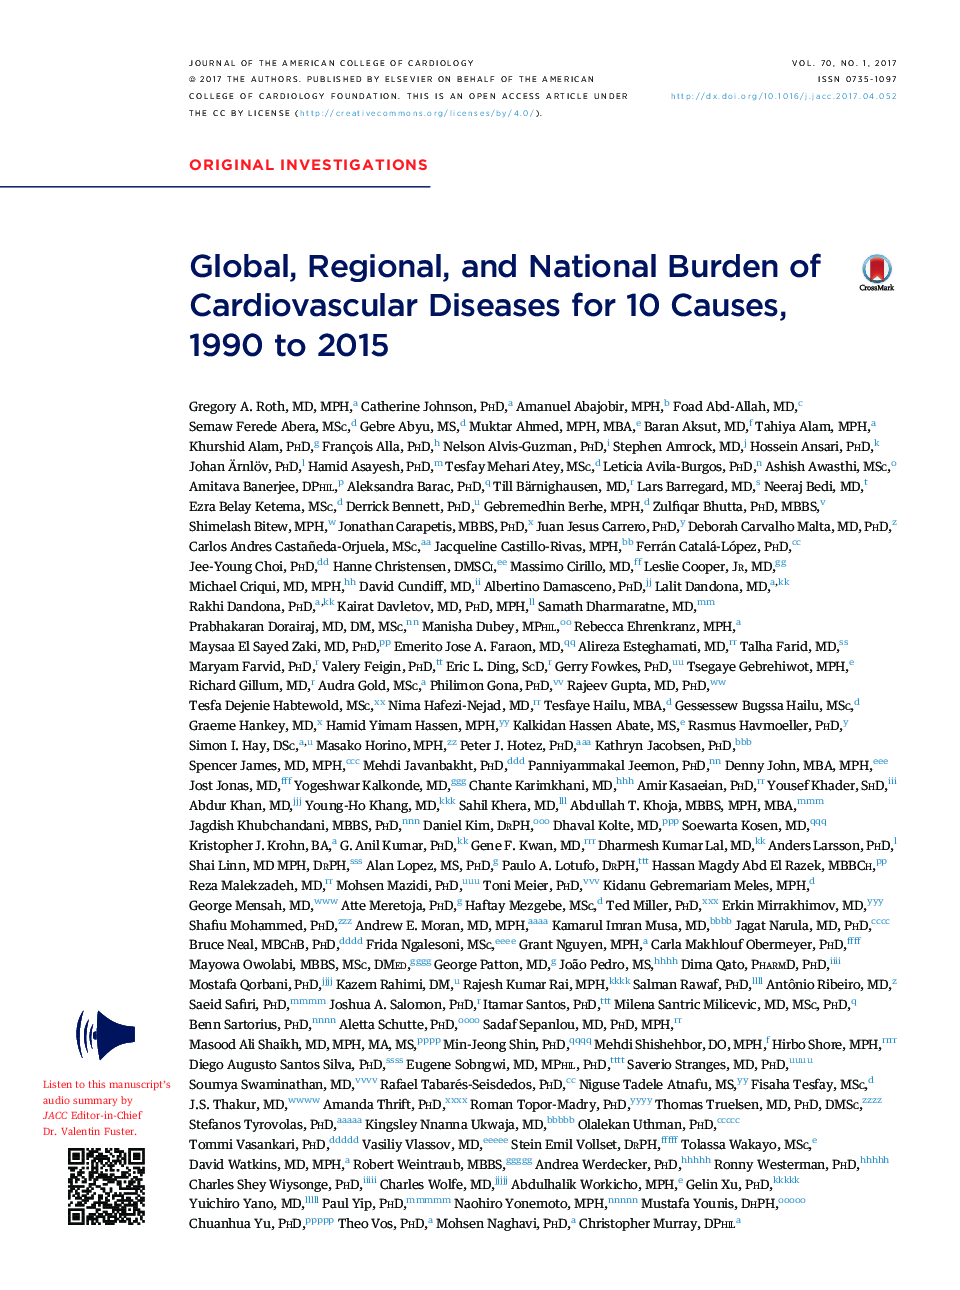 جهانی، منطقه ای، و ملی باروری بیماری های قلبی عروقی برای 10 علت، 1990 تا 2015 